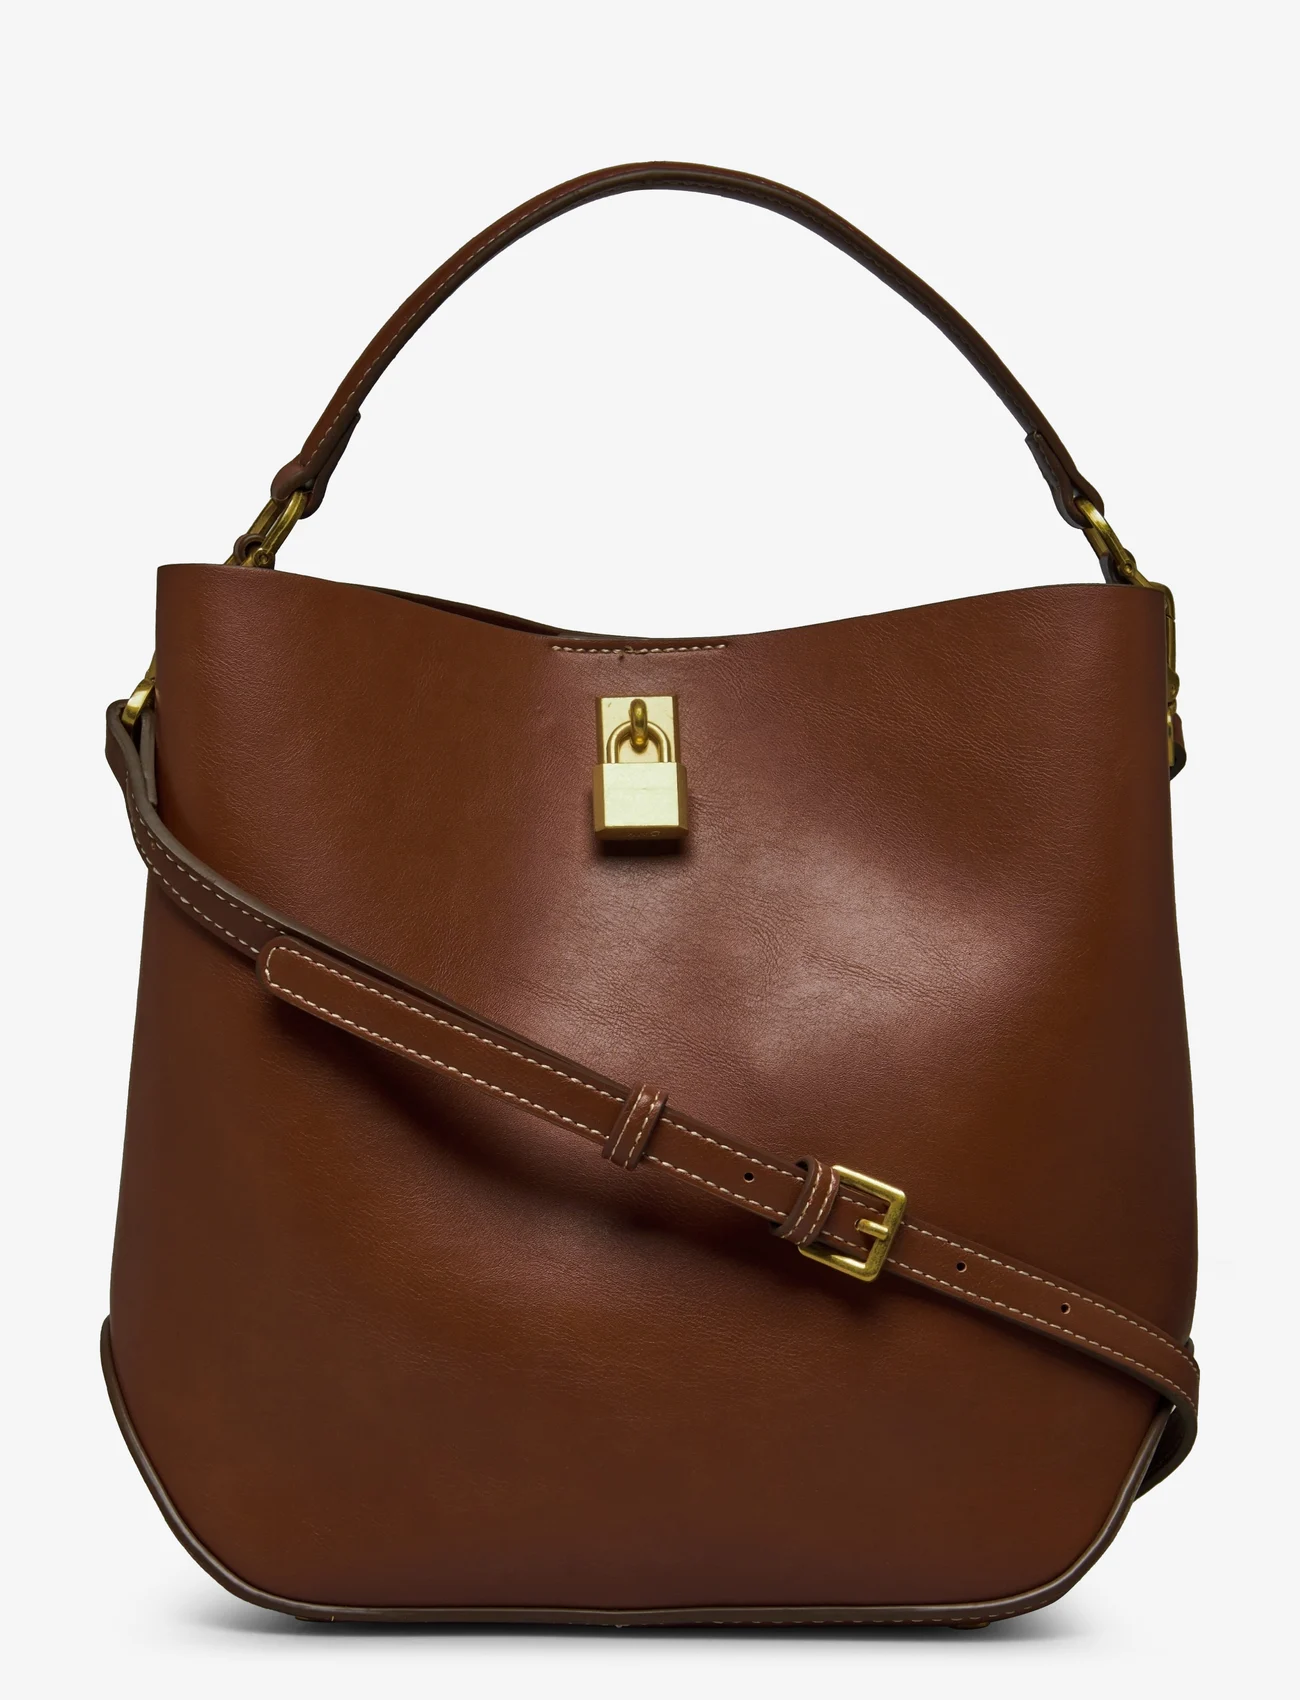 Mango - Shopper bag with padlock - festtøj til outletpriser - medium brown - 0